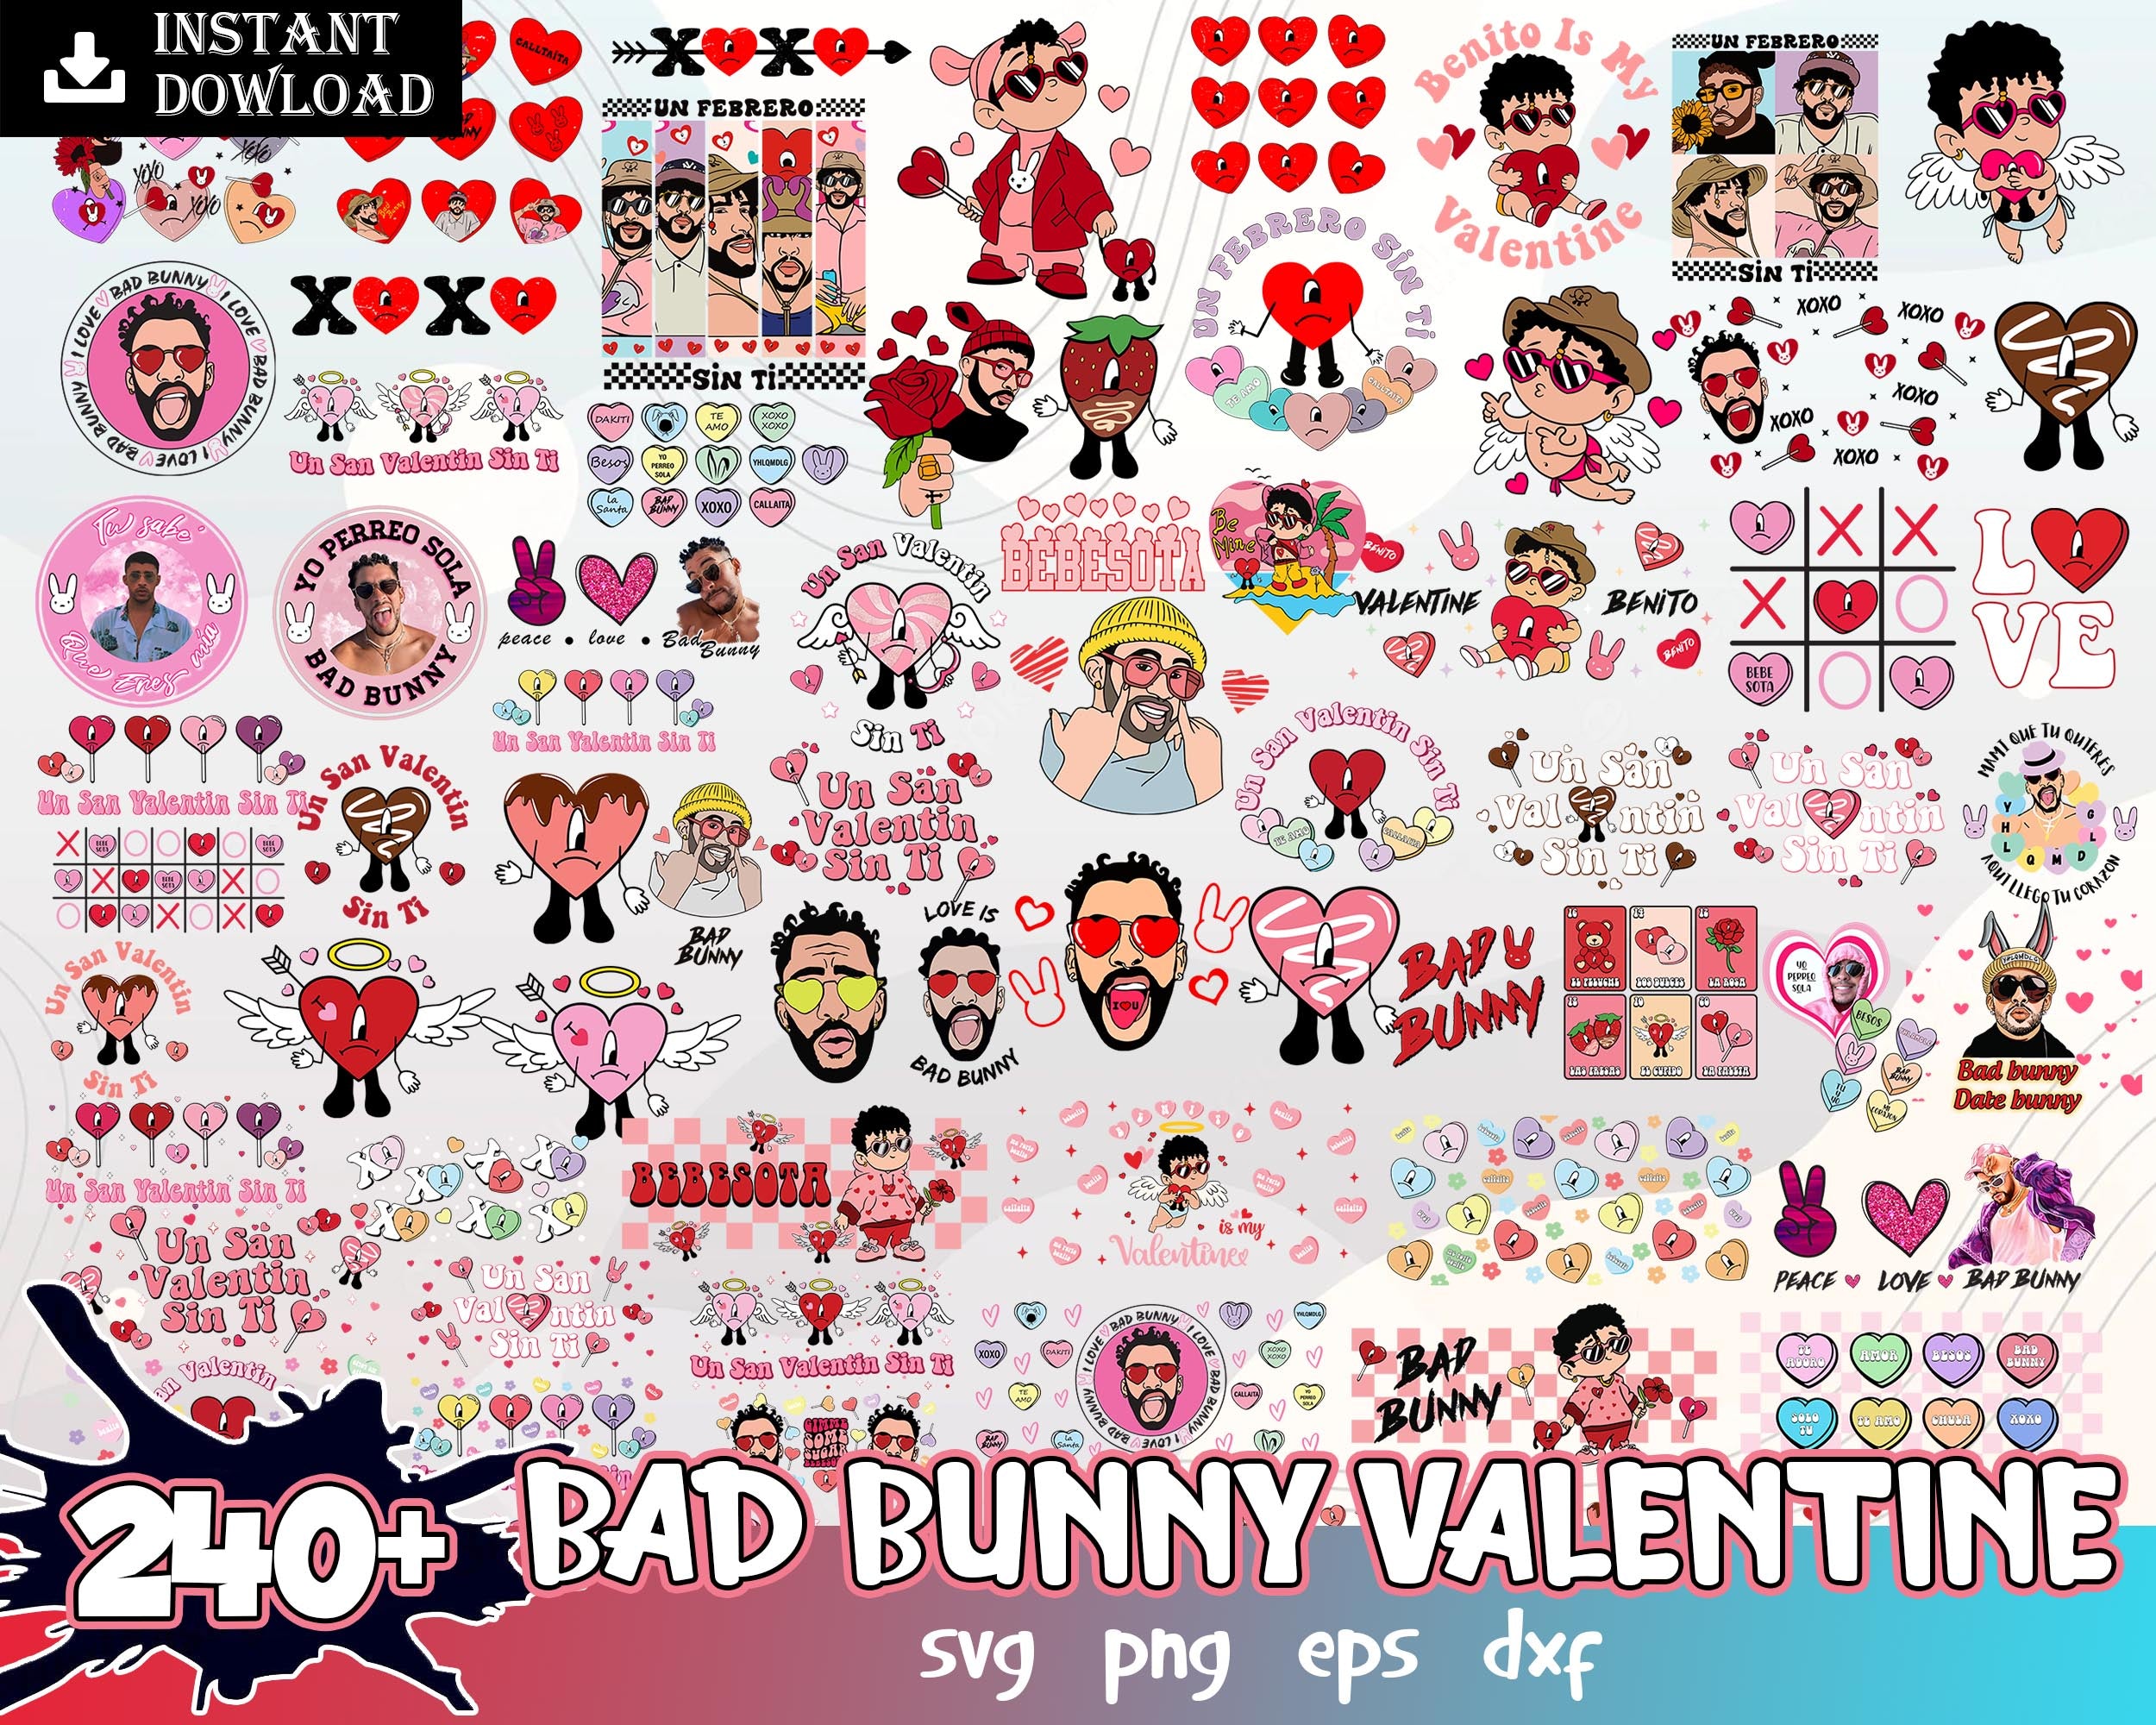 Version 2 - 240+ Bad bunny Valentines bundle, Valentine SVG PNG, eps dxf Design - Digital Download